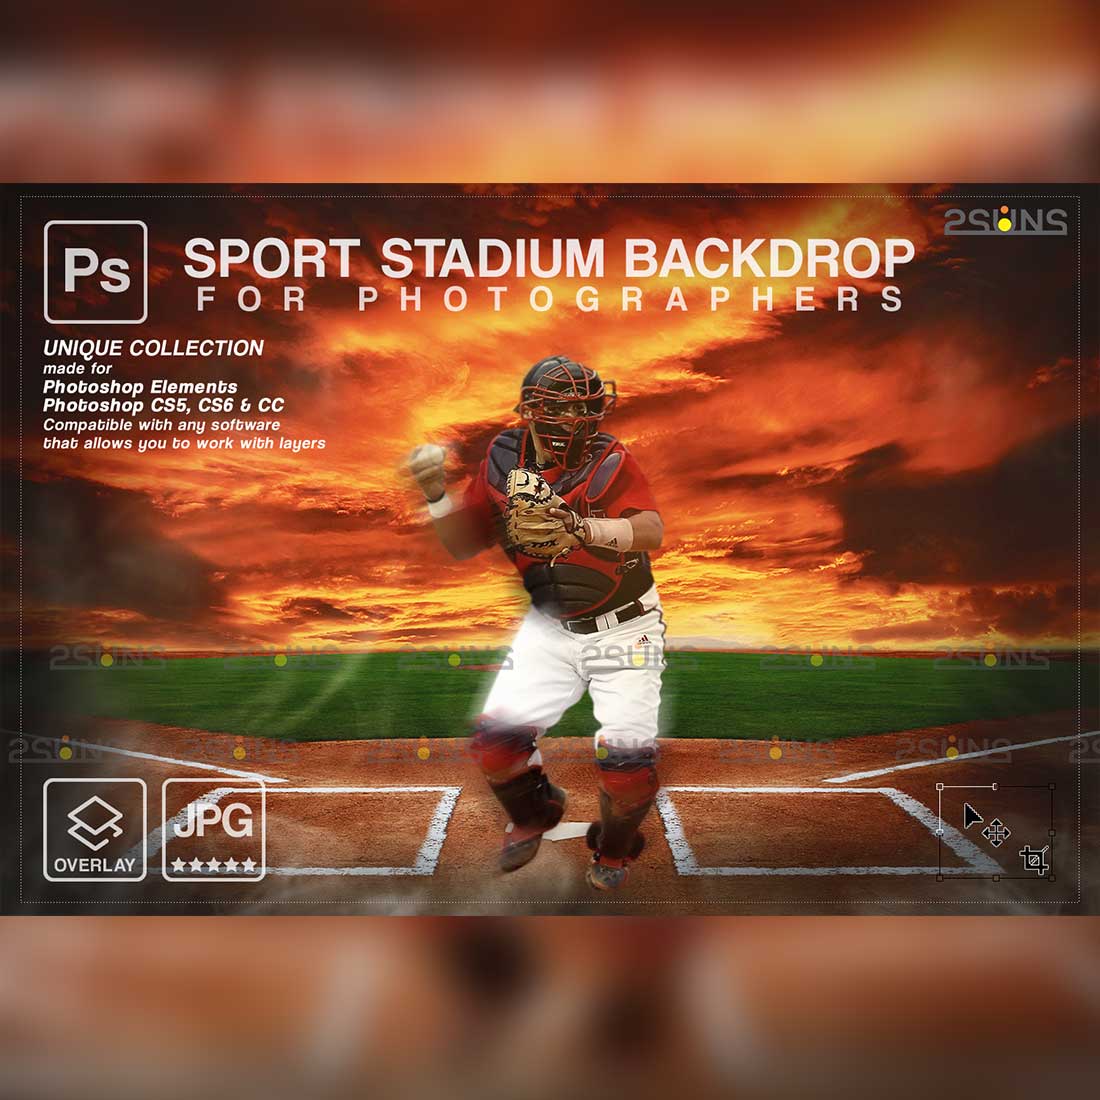 Baseball Backdrop Sports Digital Photoshop Background Cover Image.